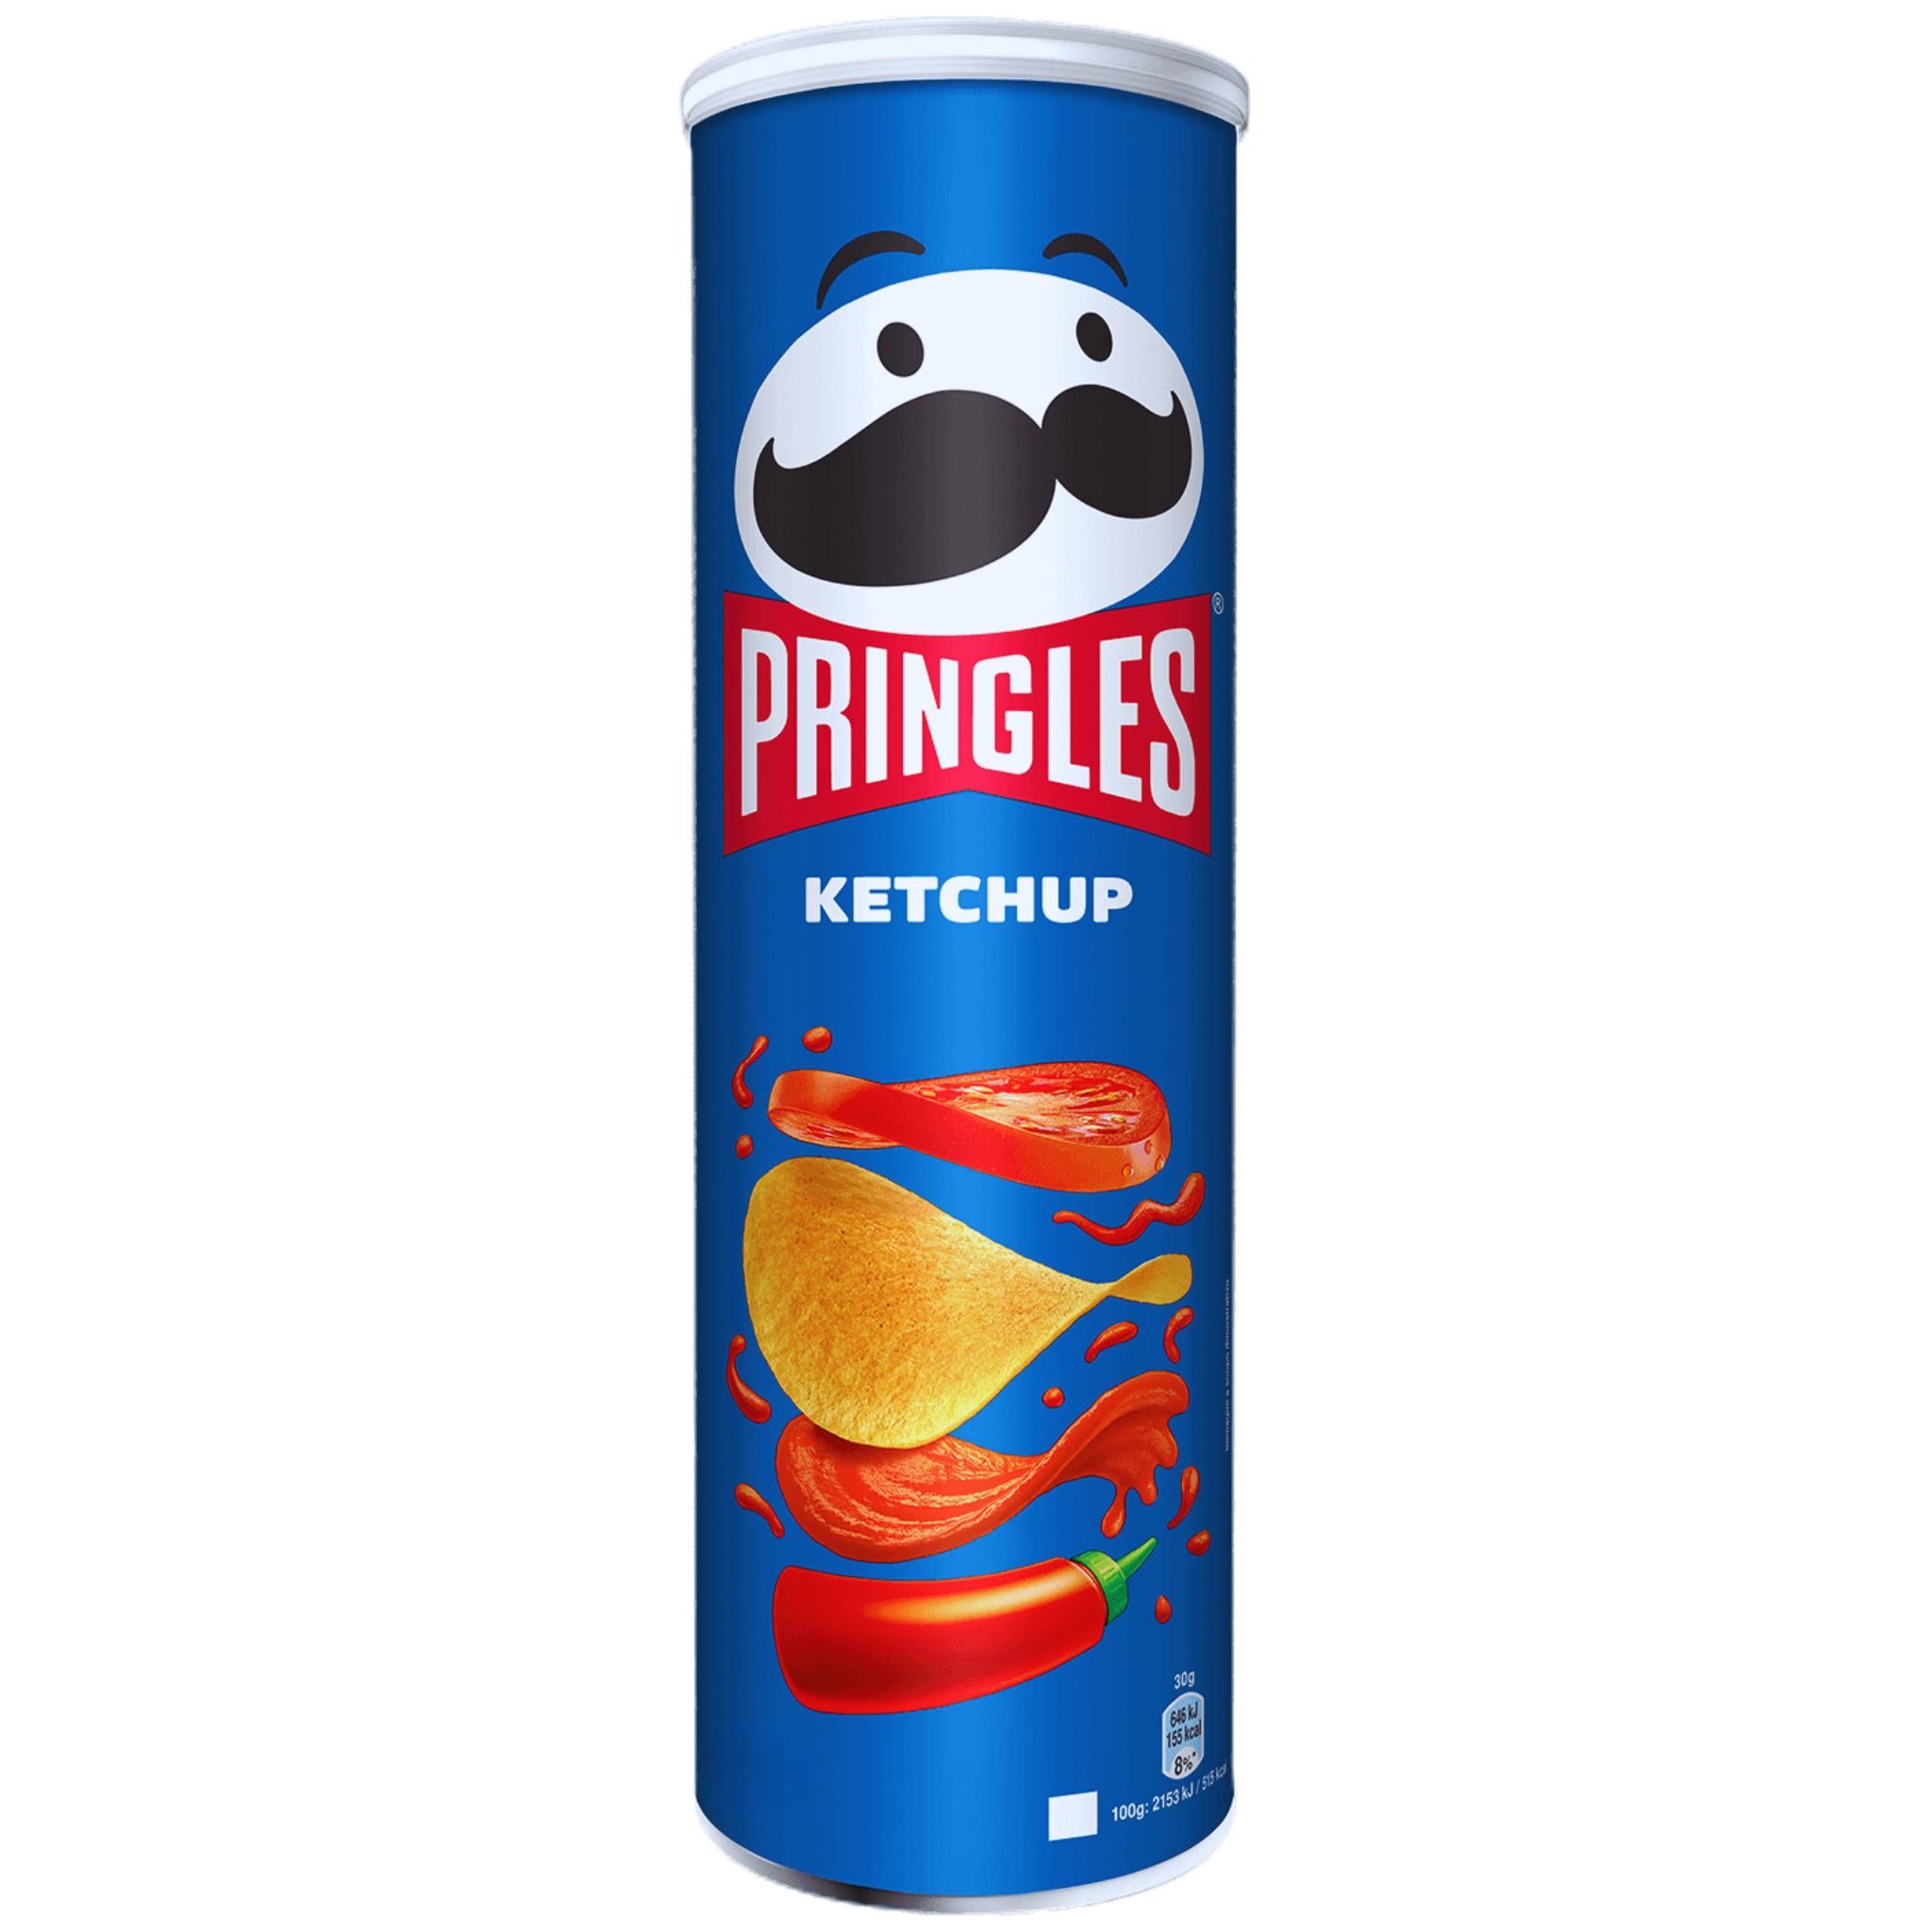 Pringles Ketchup - 165g